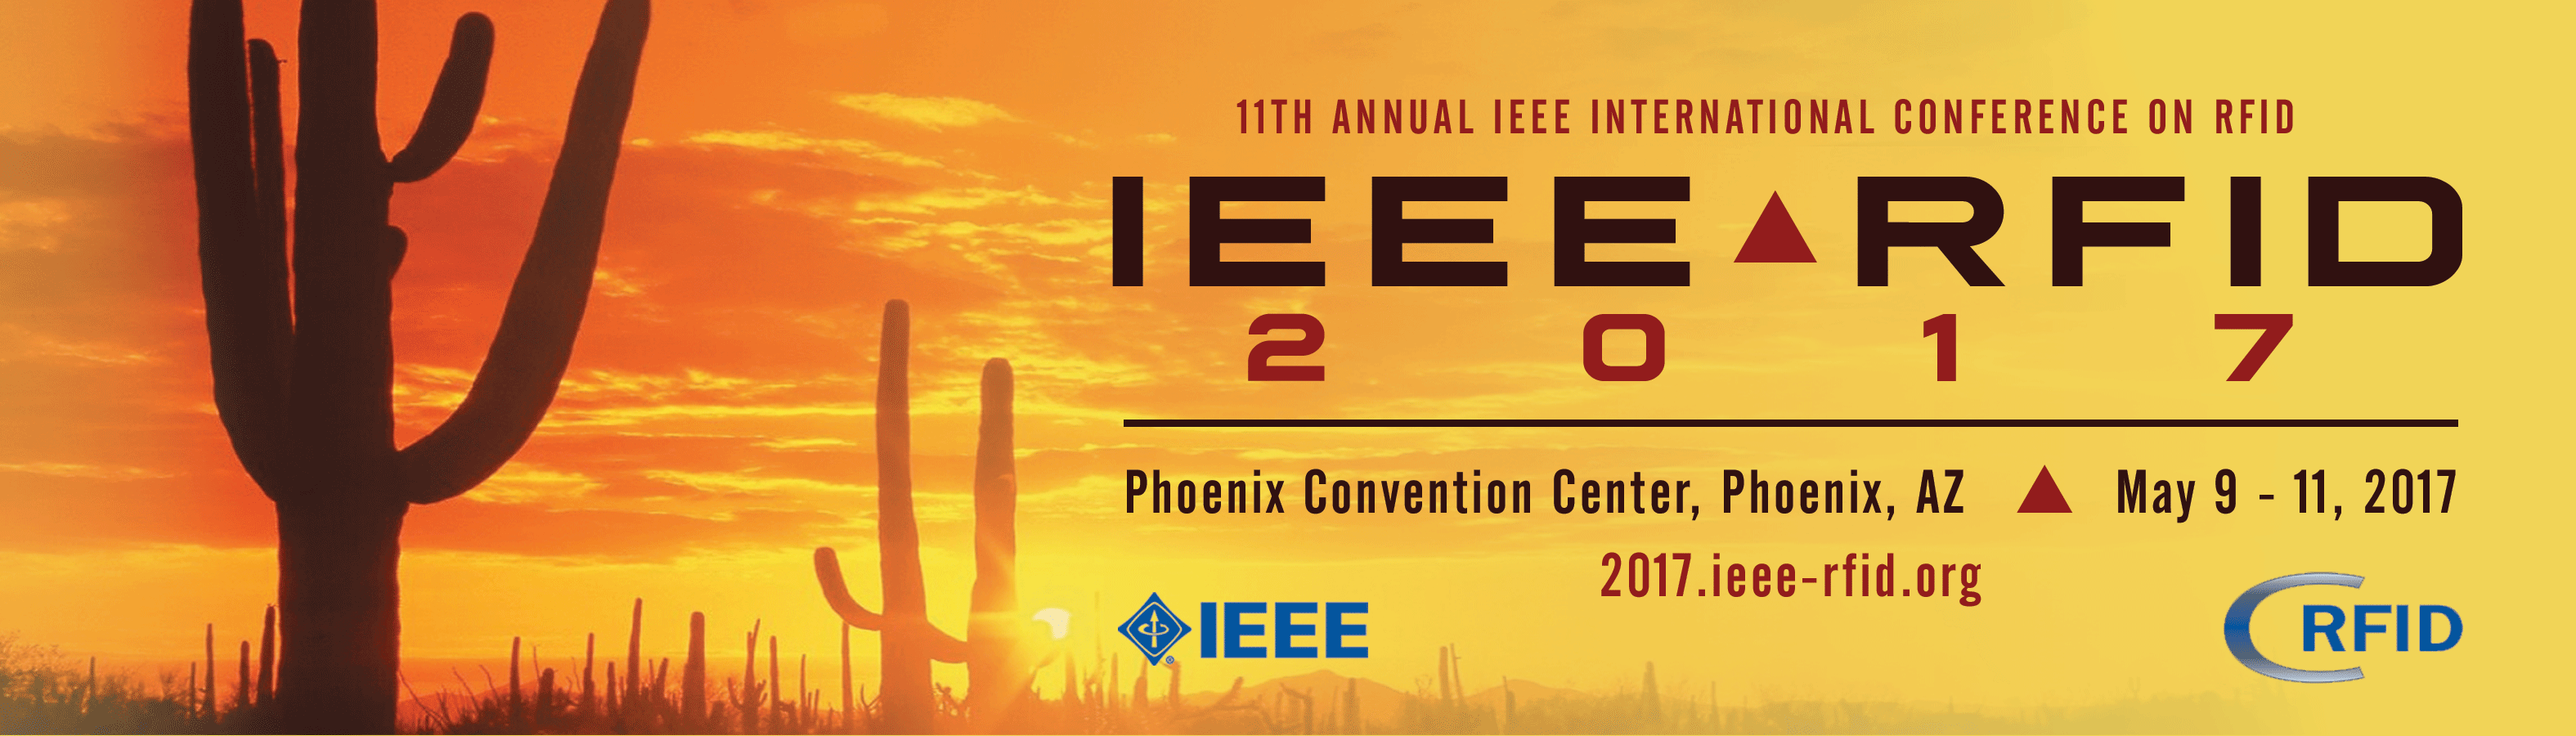 IEEE RFID 2017